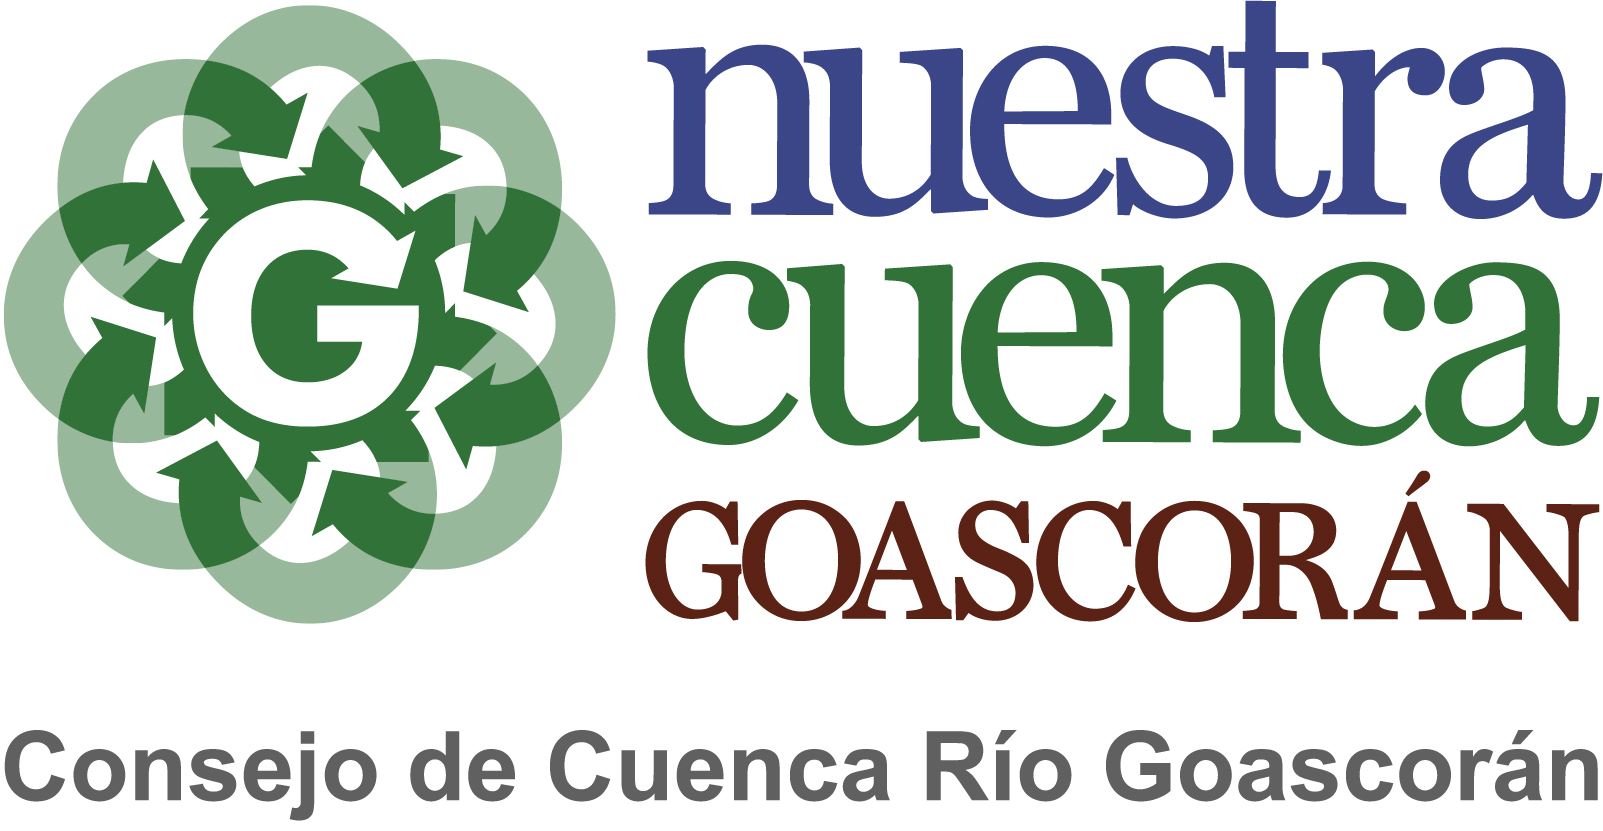 Consejo de Cuenca Rio Goascoran